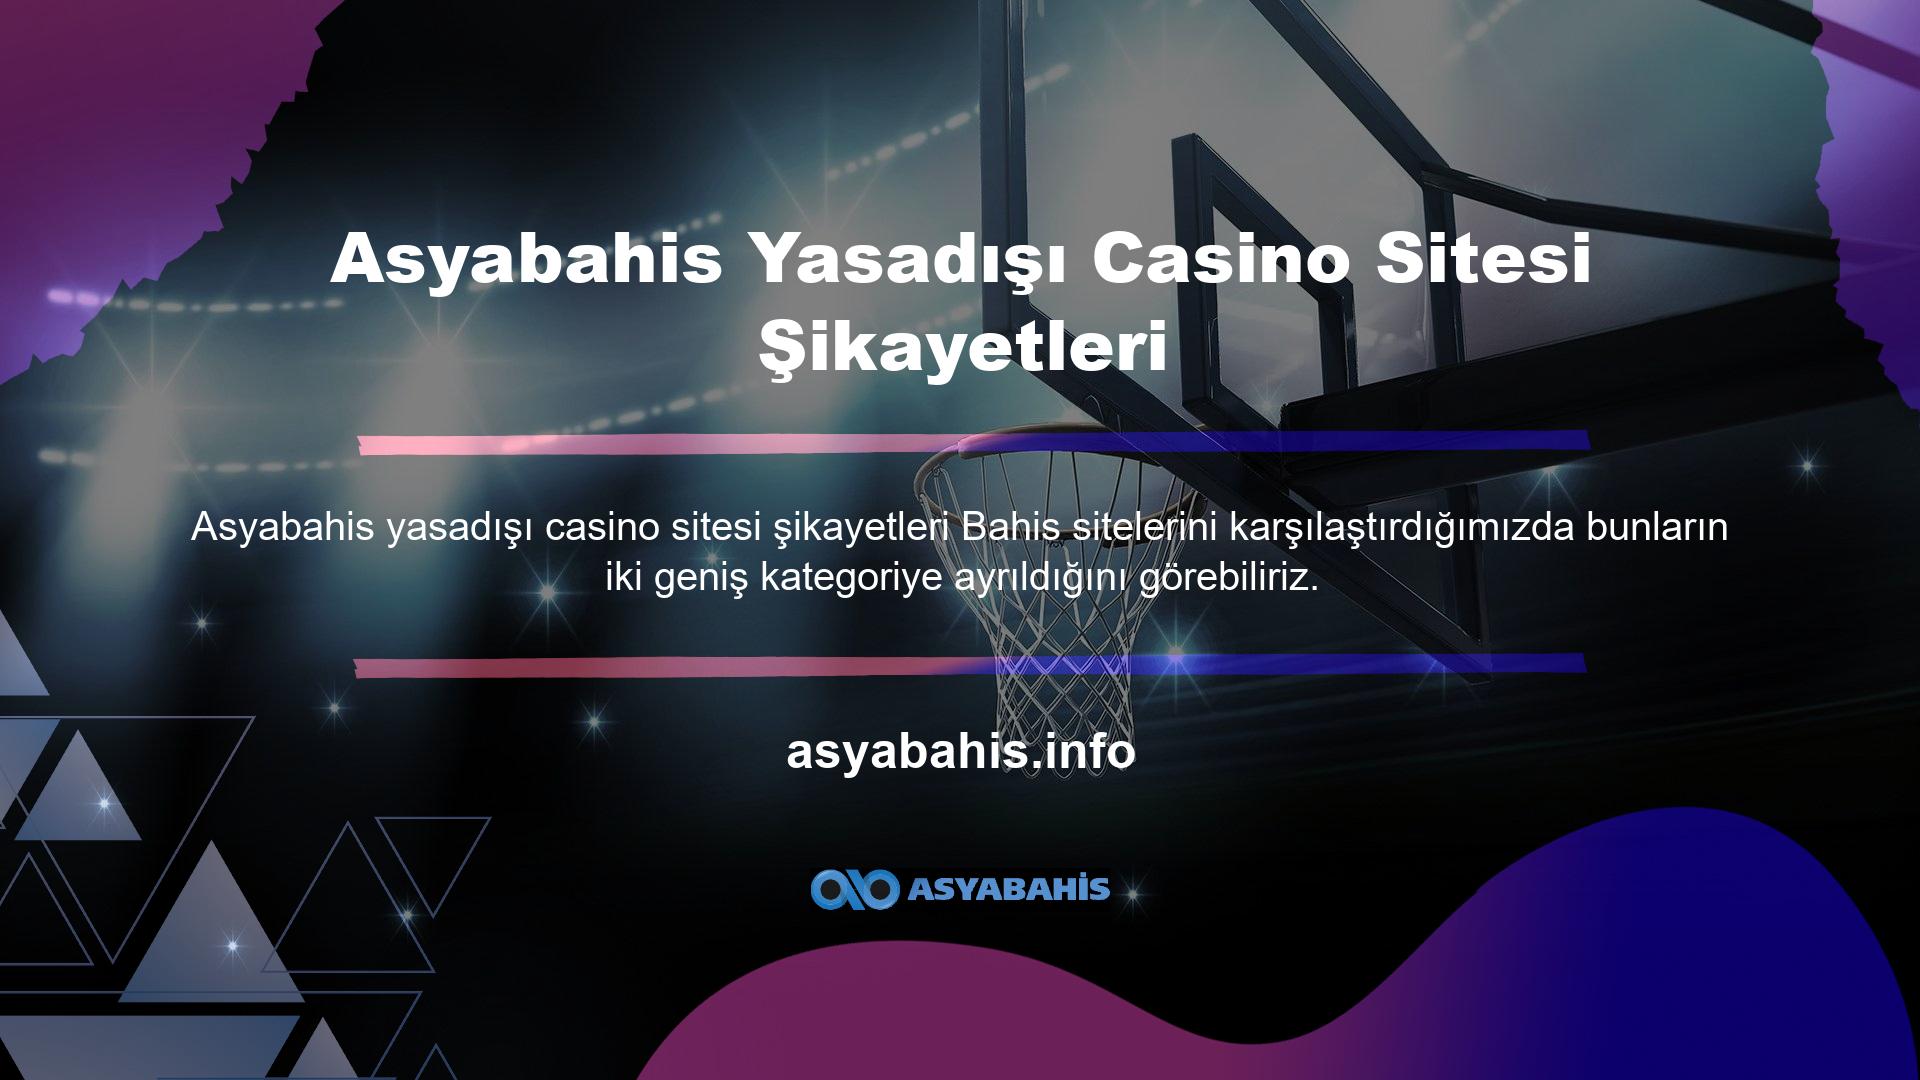 Yasadışı casino sitesi Asyabahis şikayetlerini yerel varsayılan siteyle karşılaştırmak, karşılaştırma sayısını artırdı